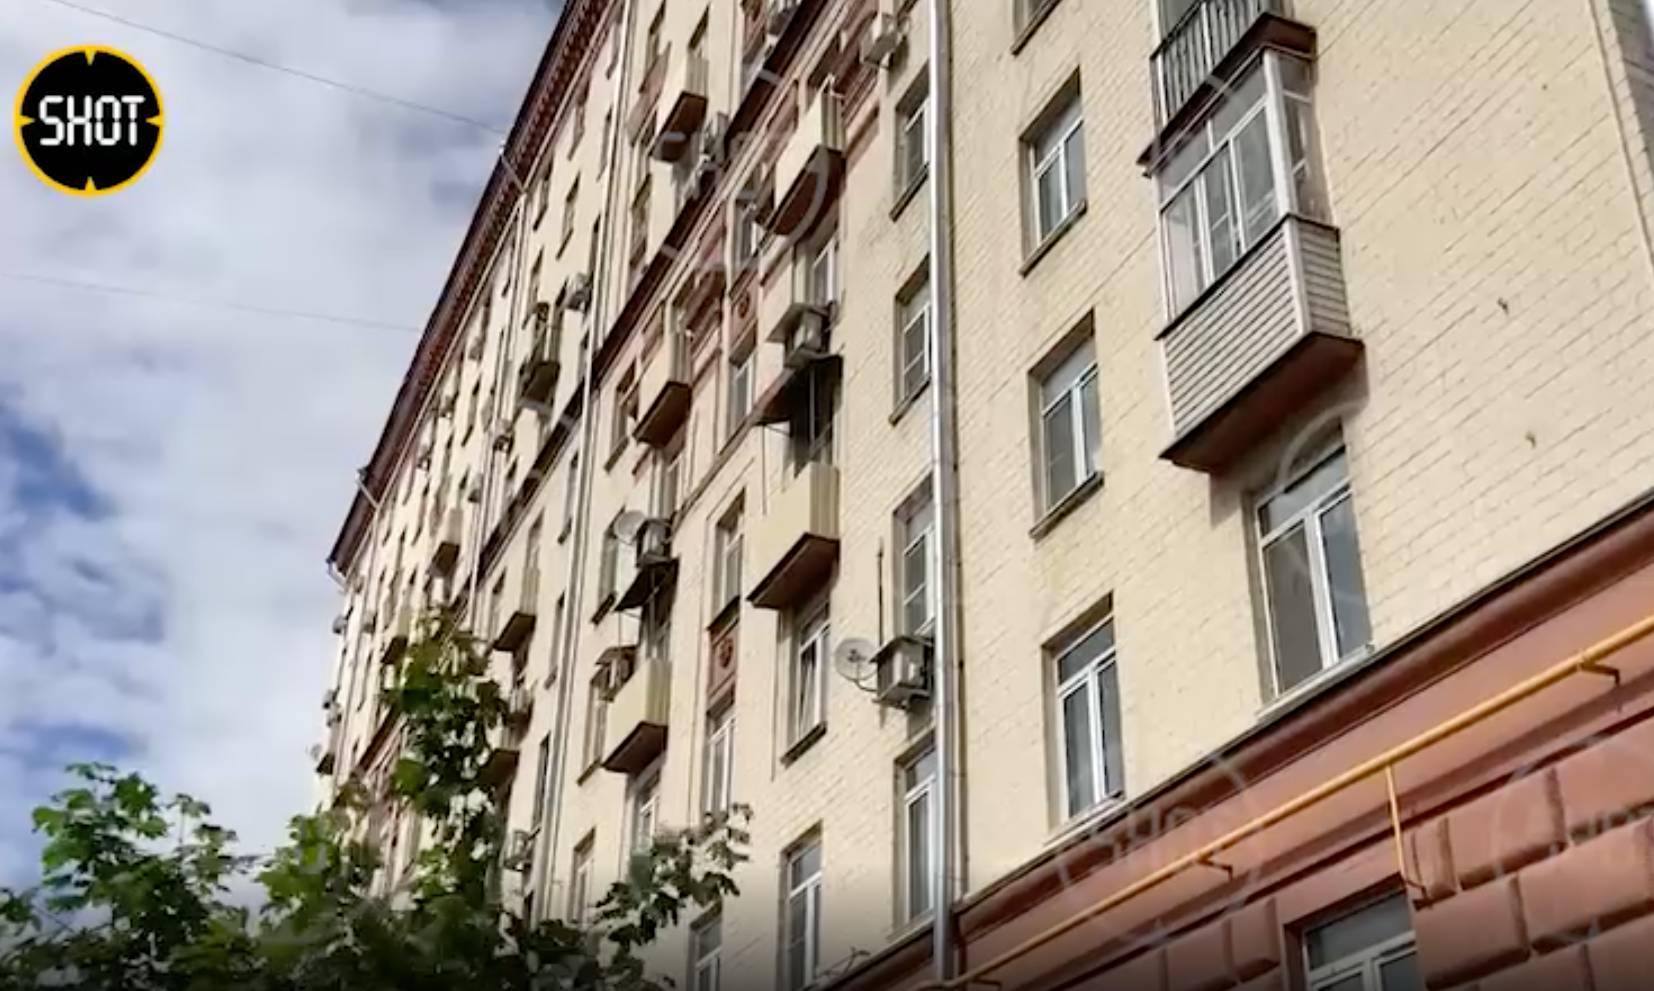 Очевидец рассказал свою версию падения матери с ребёнком из окна многоэтажки в Москве